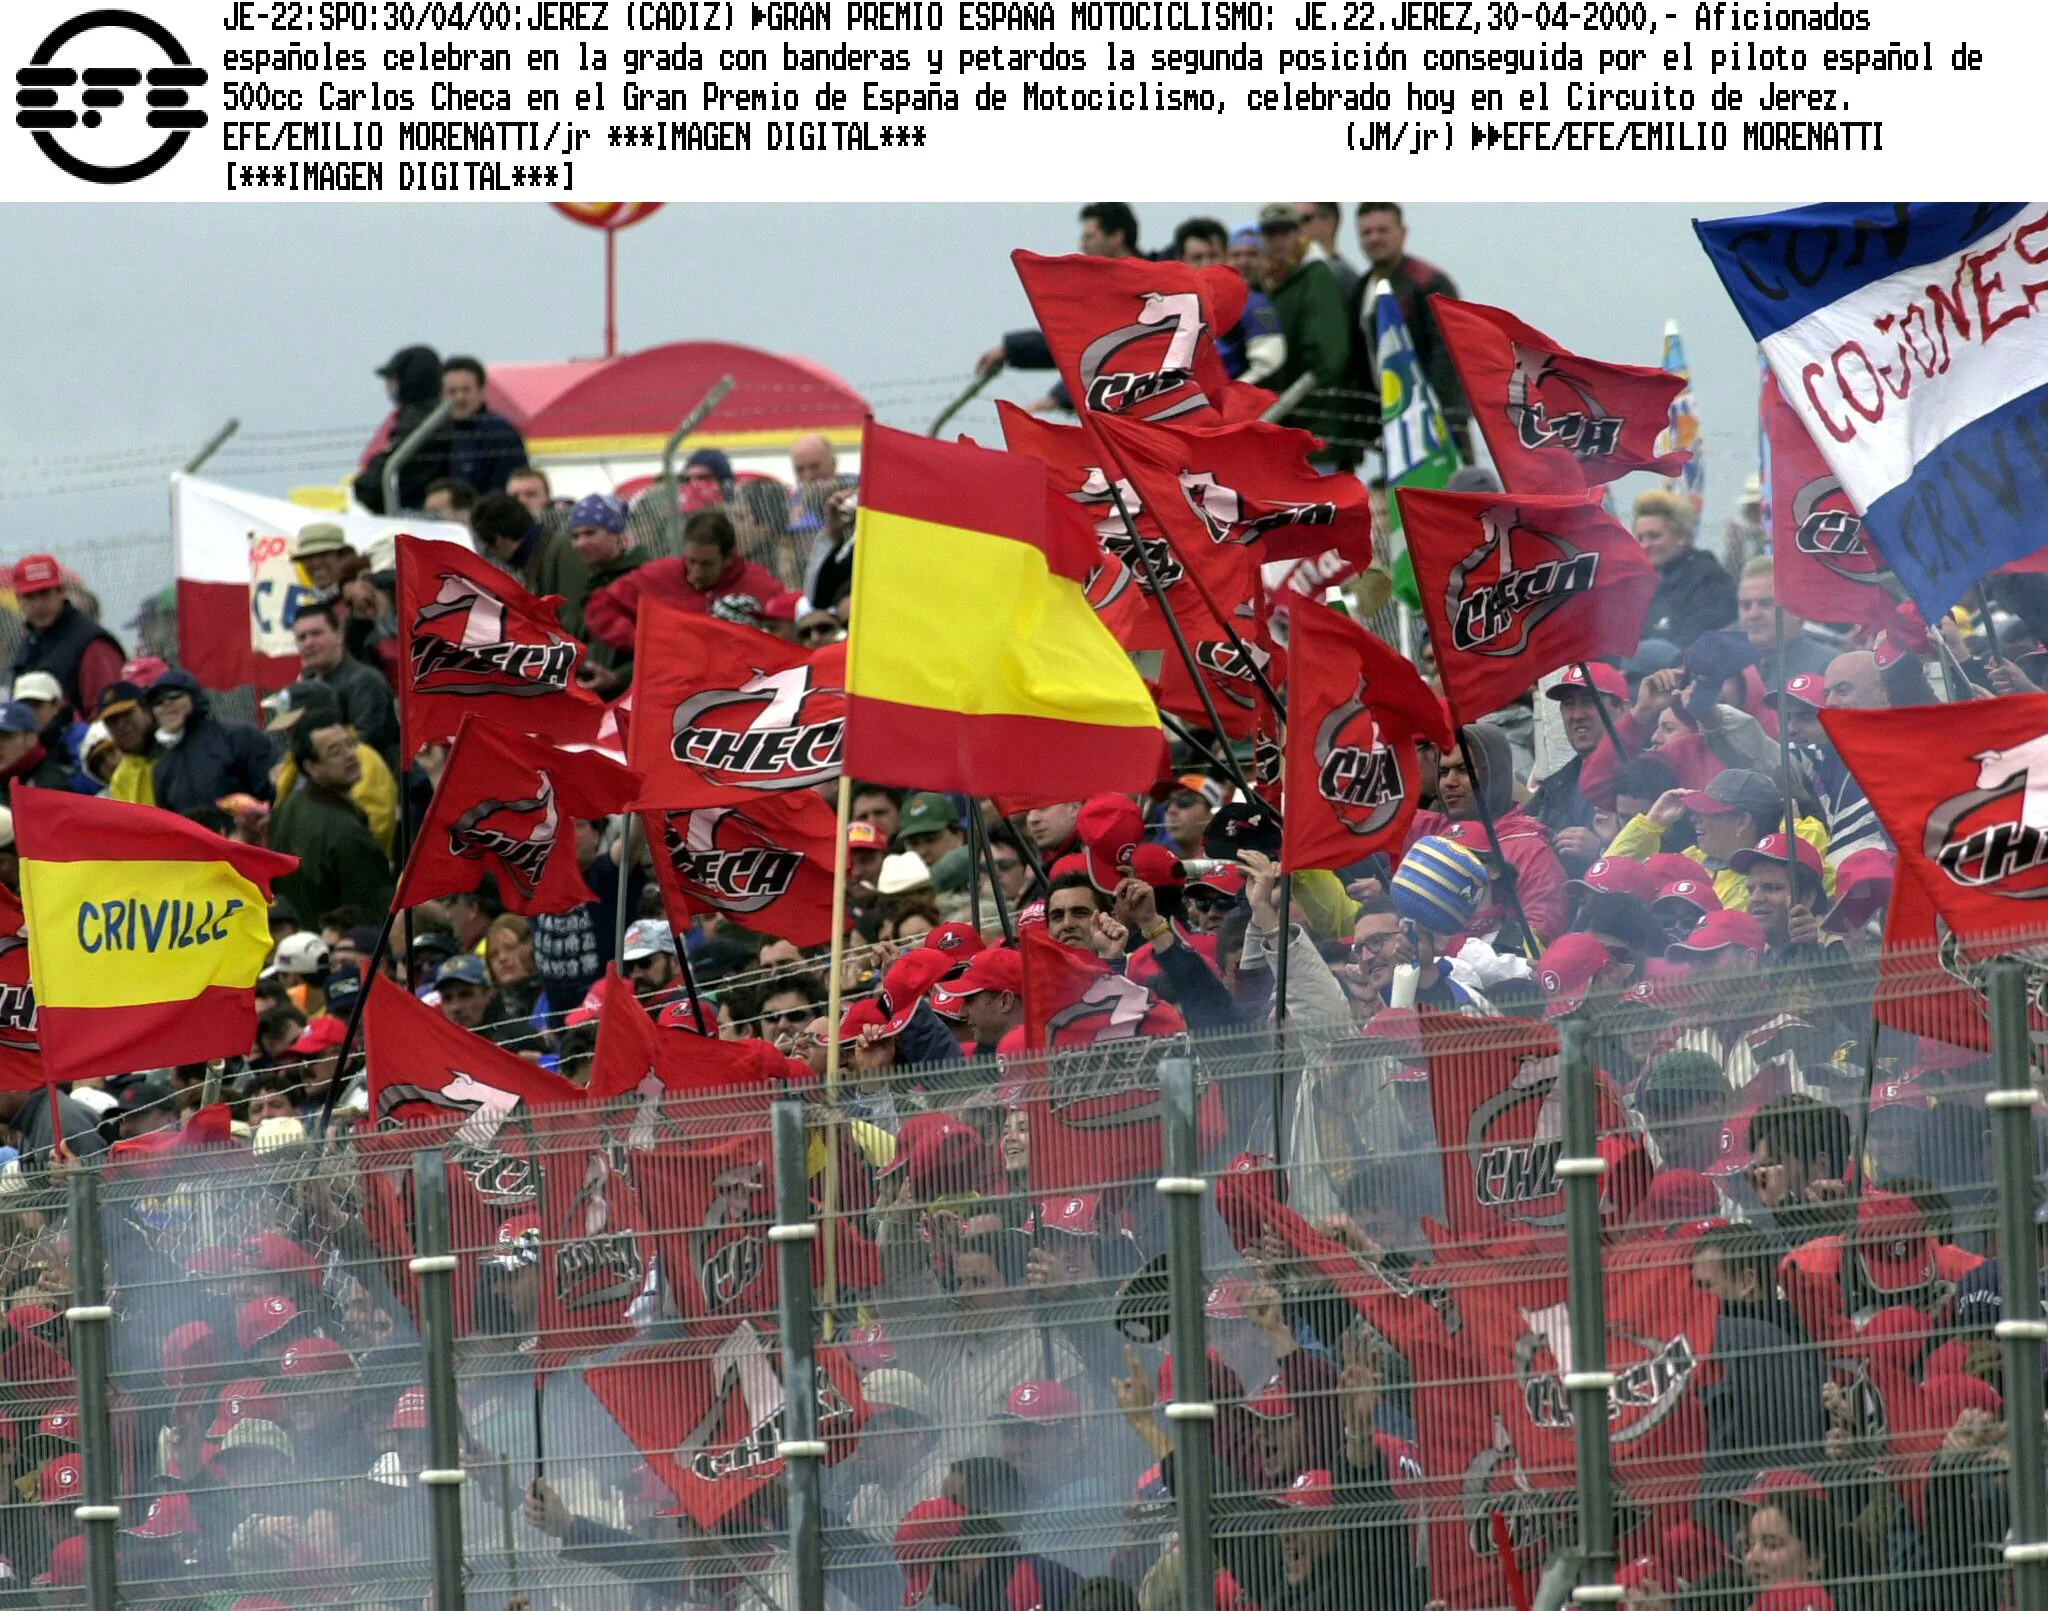 Aficionados españoles en la grada con banderas y petardos en el Gran Premio de España de Motociclismo de Jerez.